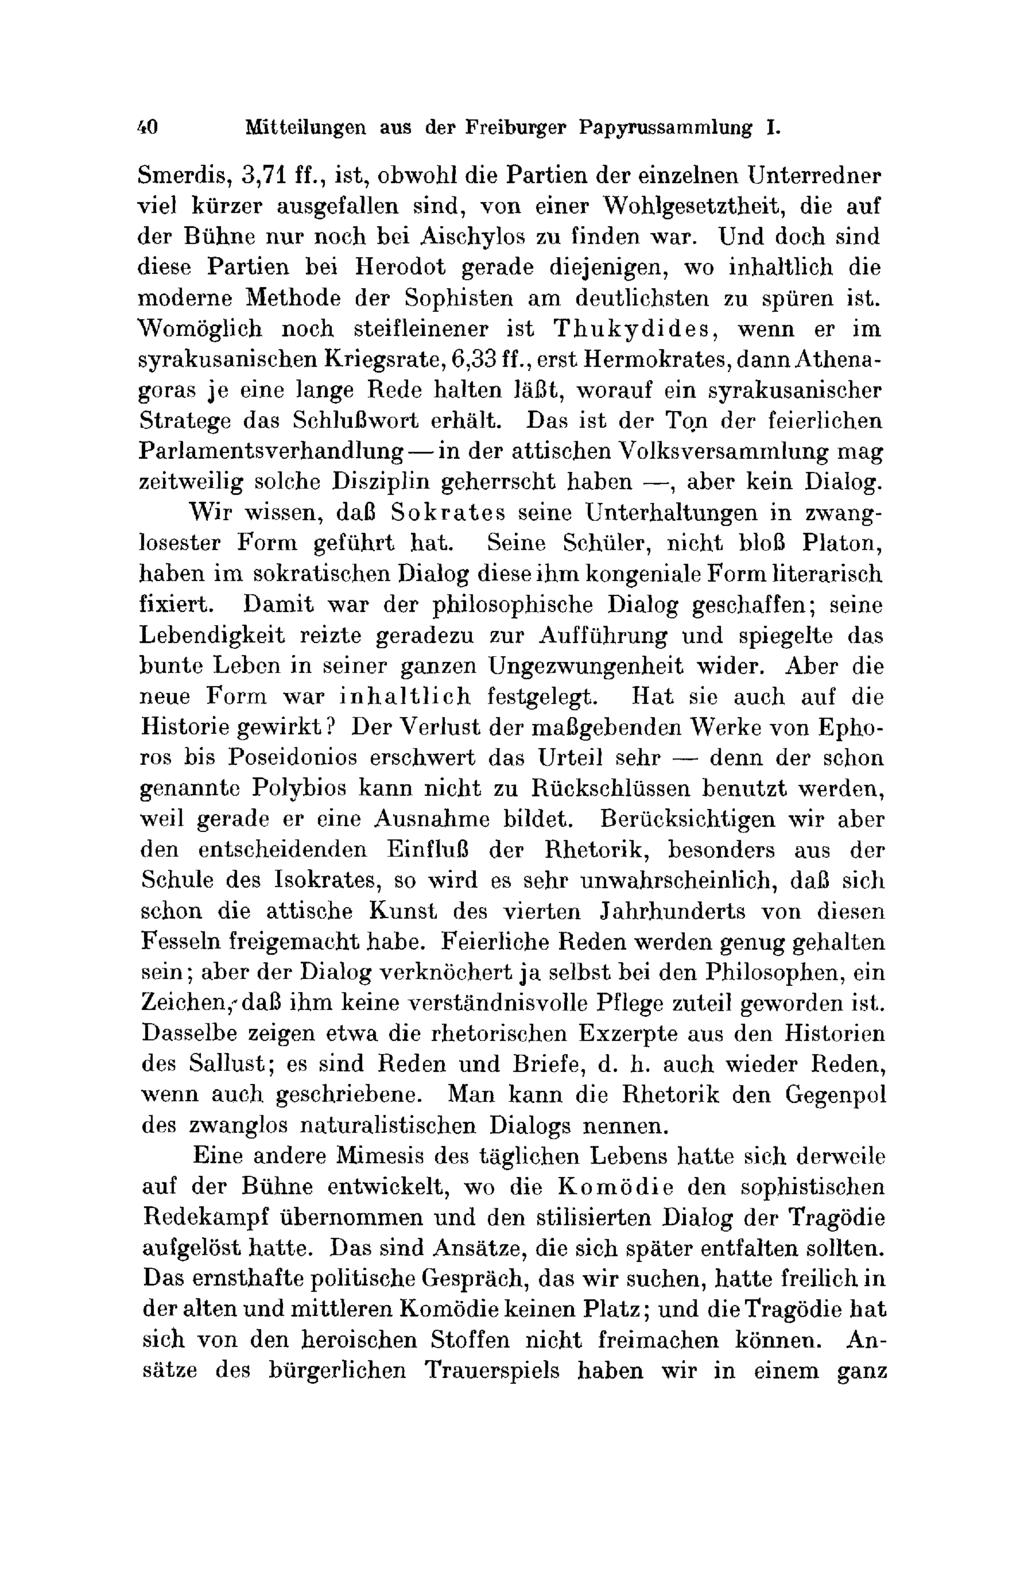 40 Mitteilungen aus der Freiburger Ραρyrussammlung I. Smerdis, 3,71 ff.